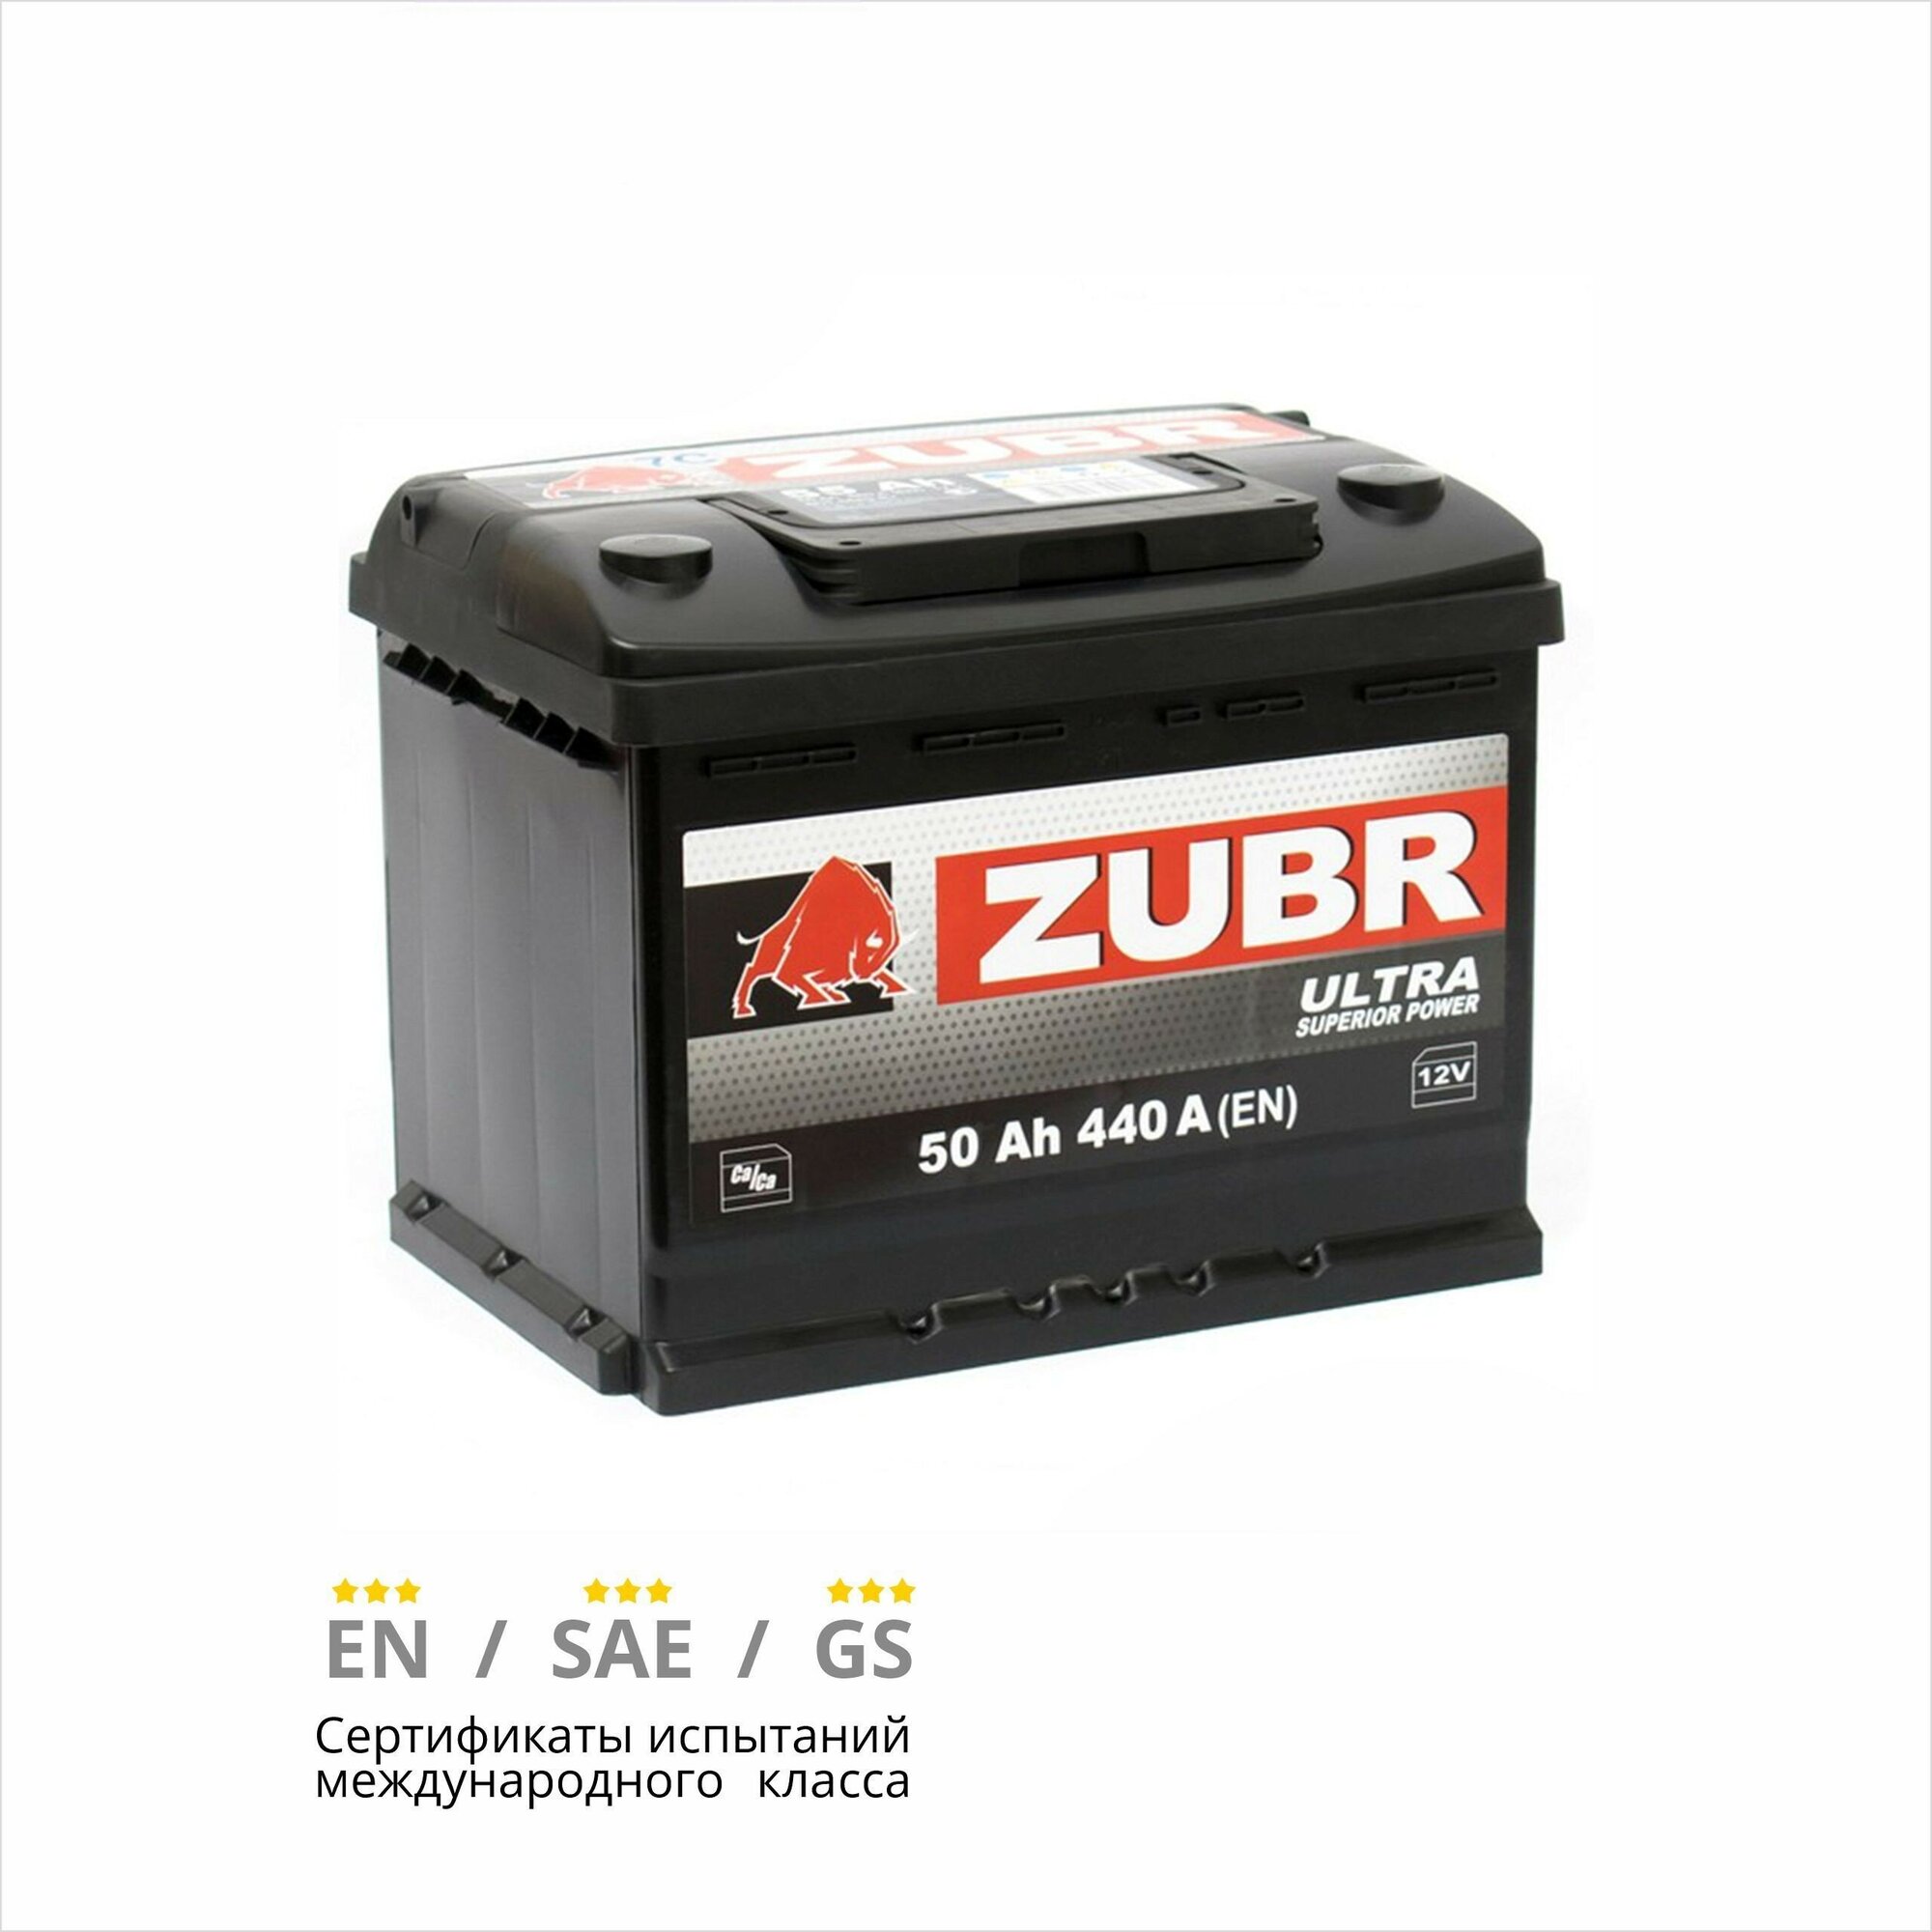 Аккумулятор автомобильный ZUBR Ultra 50 Ah 440 A обратная полярность 207x175x190